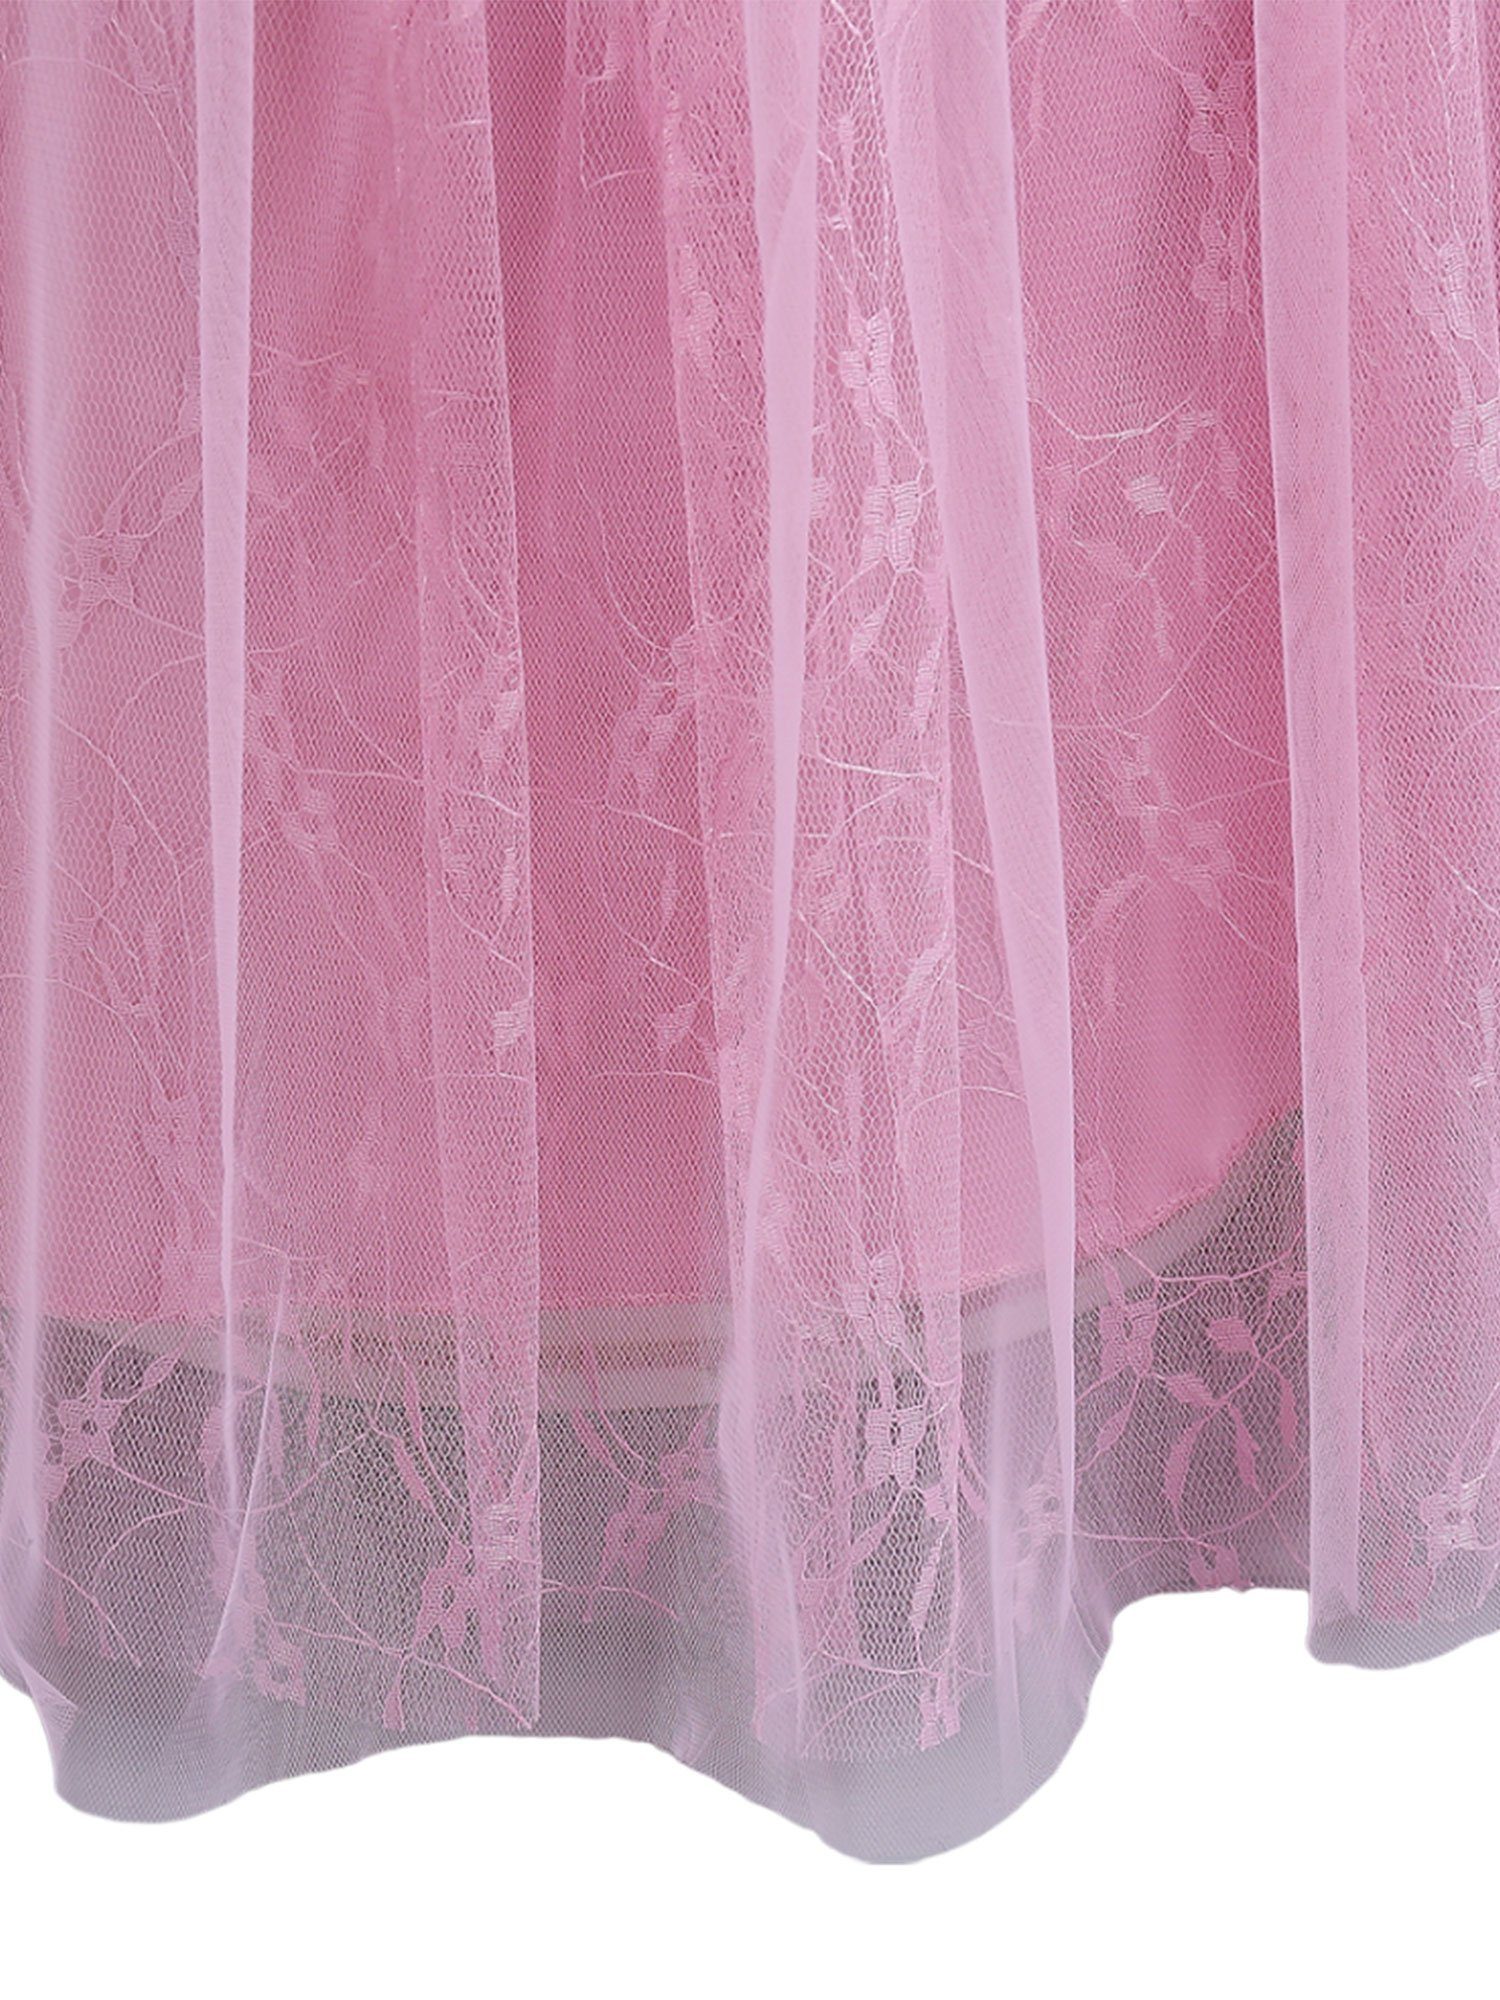 Abendkleid der Mädchen LAPA mit Bodenlanges Kleid Spitze Lotuswurzel Einfacher Farbe Partykleid